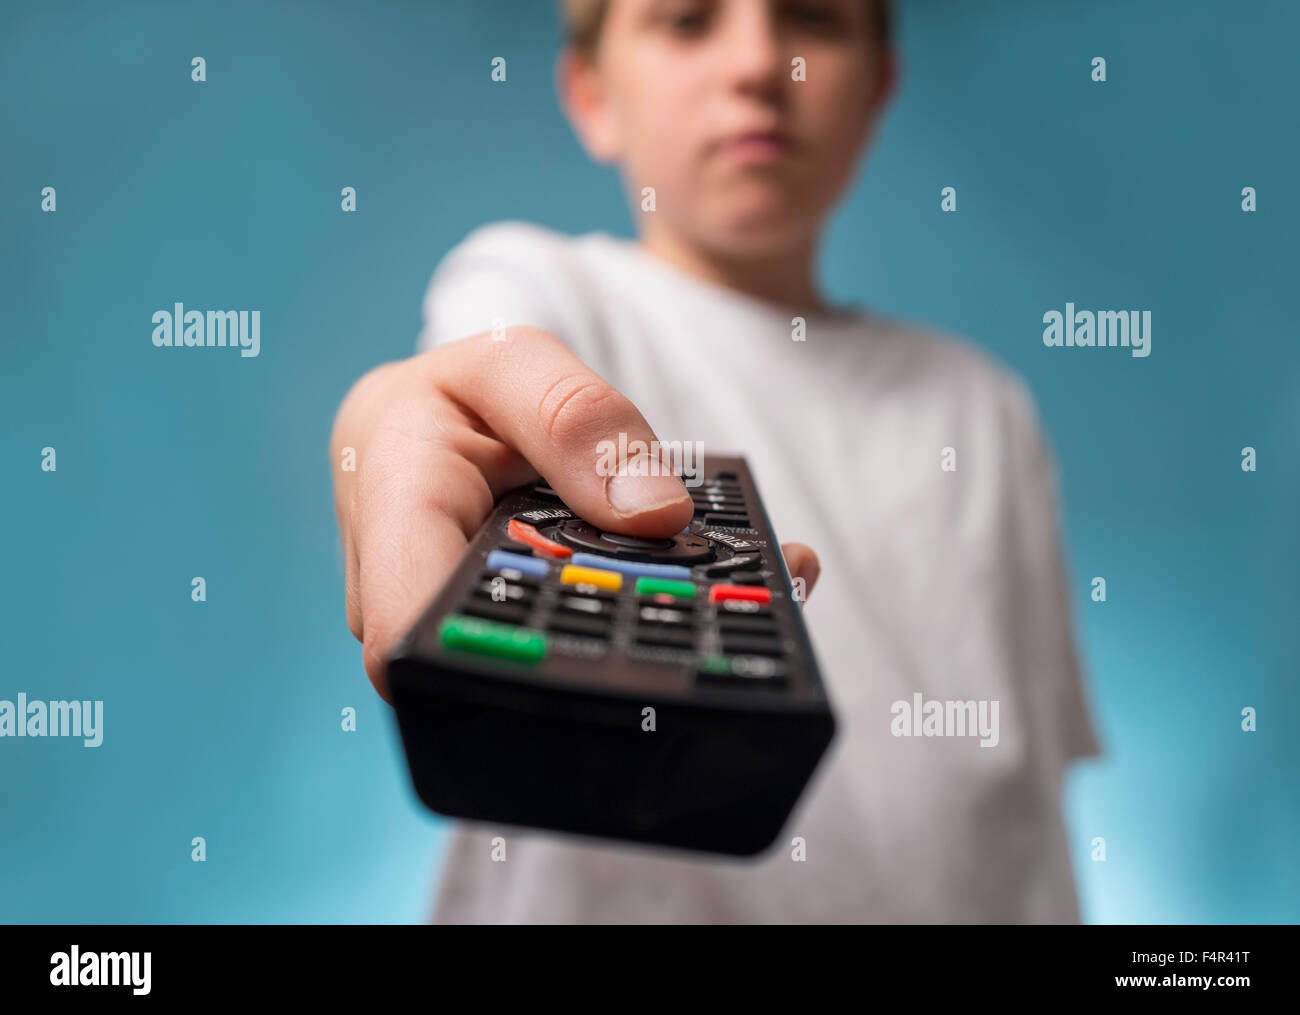 Un garçon ennuyeux d'un changement de chaîne à l'aide d'une télécommande du téléviseur Banque D'Images